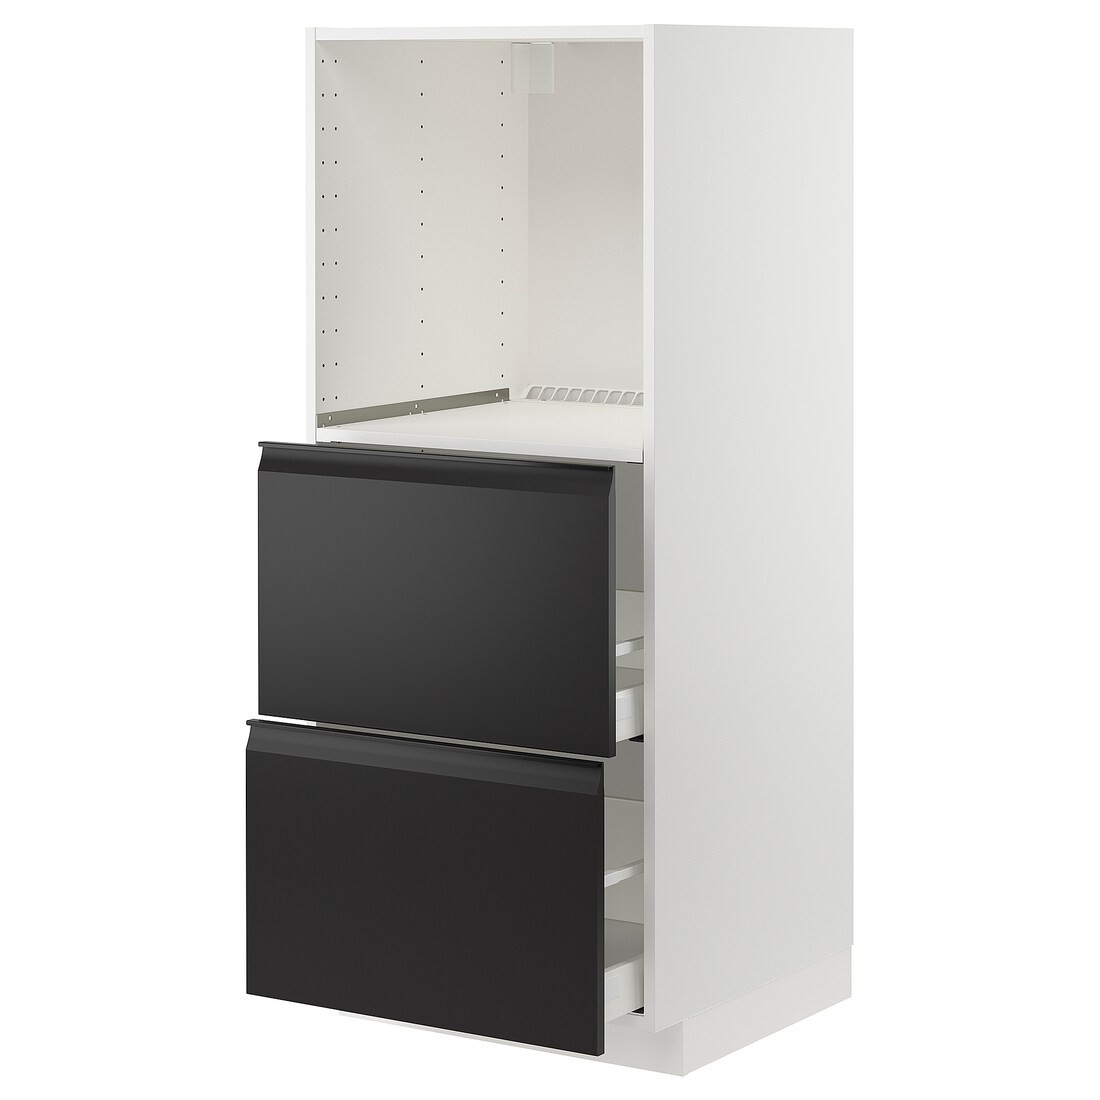 METOD МЕТОД / MAXIMERA МАКСИМЕРА Высокий шкаф с 2 ящиками для духовки, белый / Upplöv матовый антрацит, 60x60x140 см